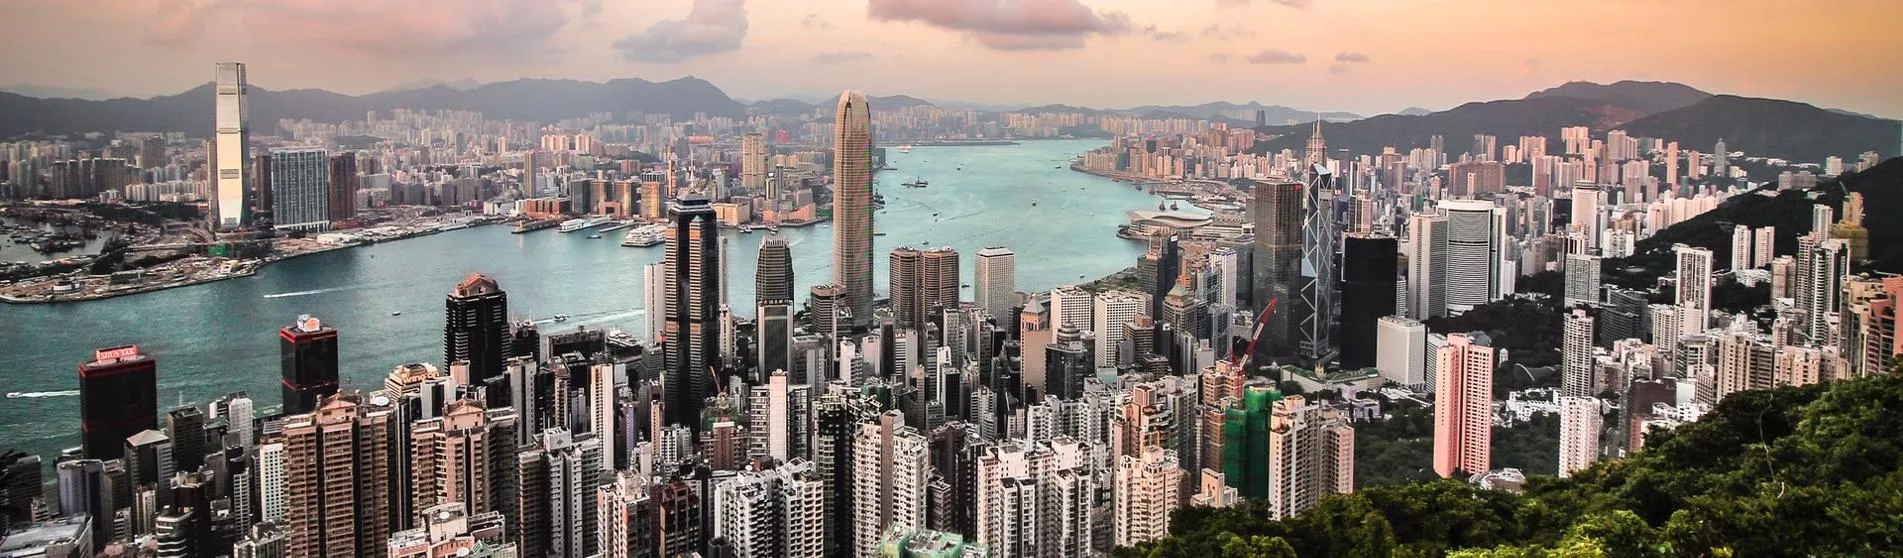 Hong Kong Aerial View